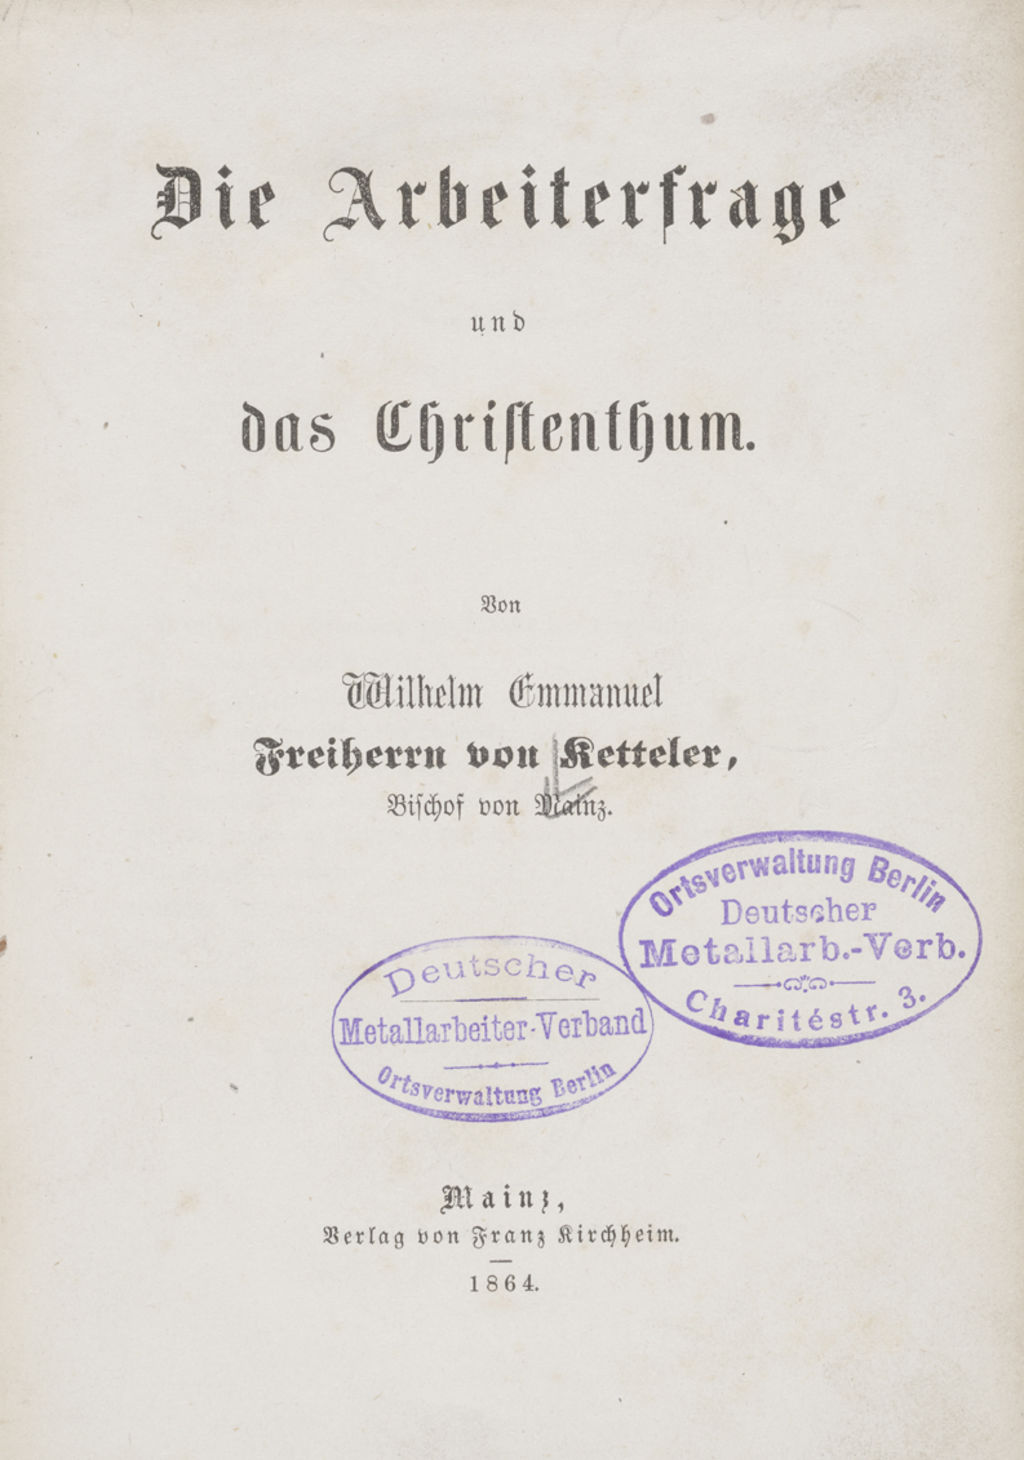 [Buch: Ketteler, Emmanuel Freiherr von: "Die Arbeiterfrage und das Christentum", 1864]